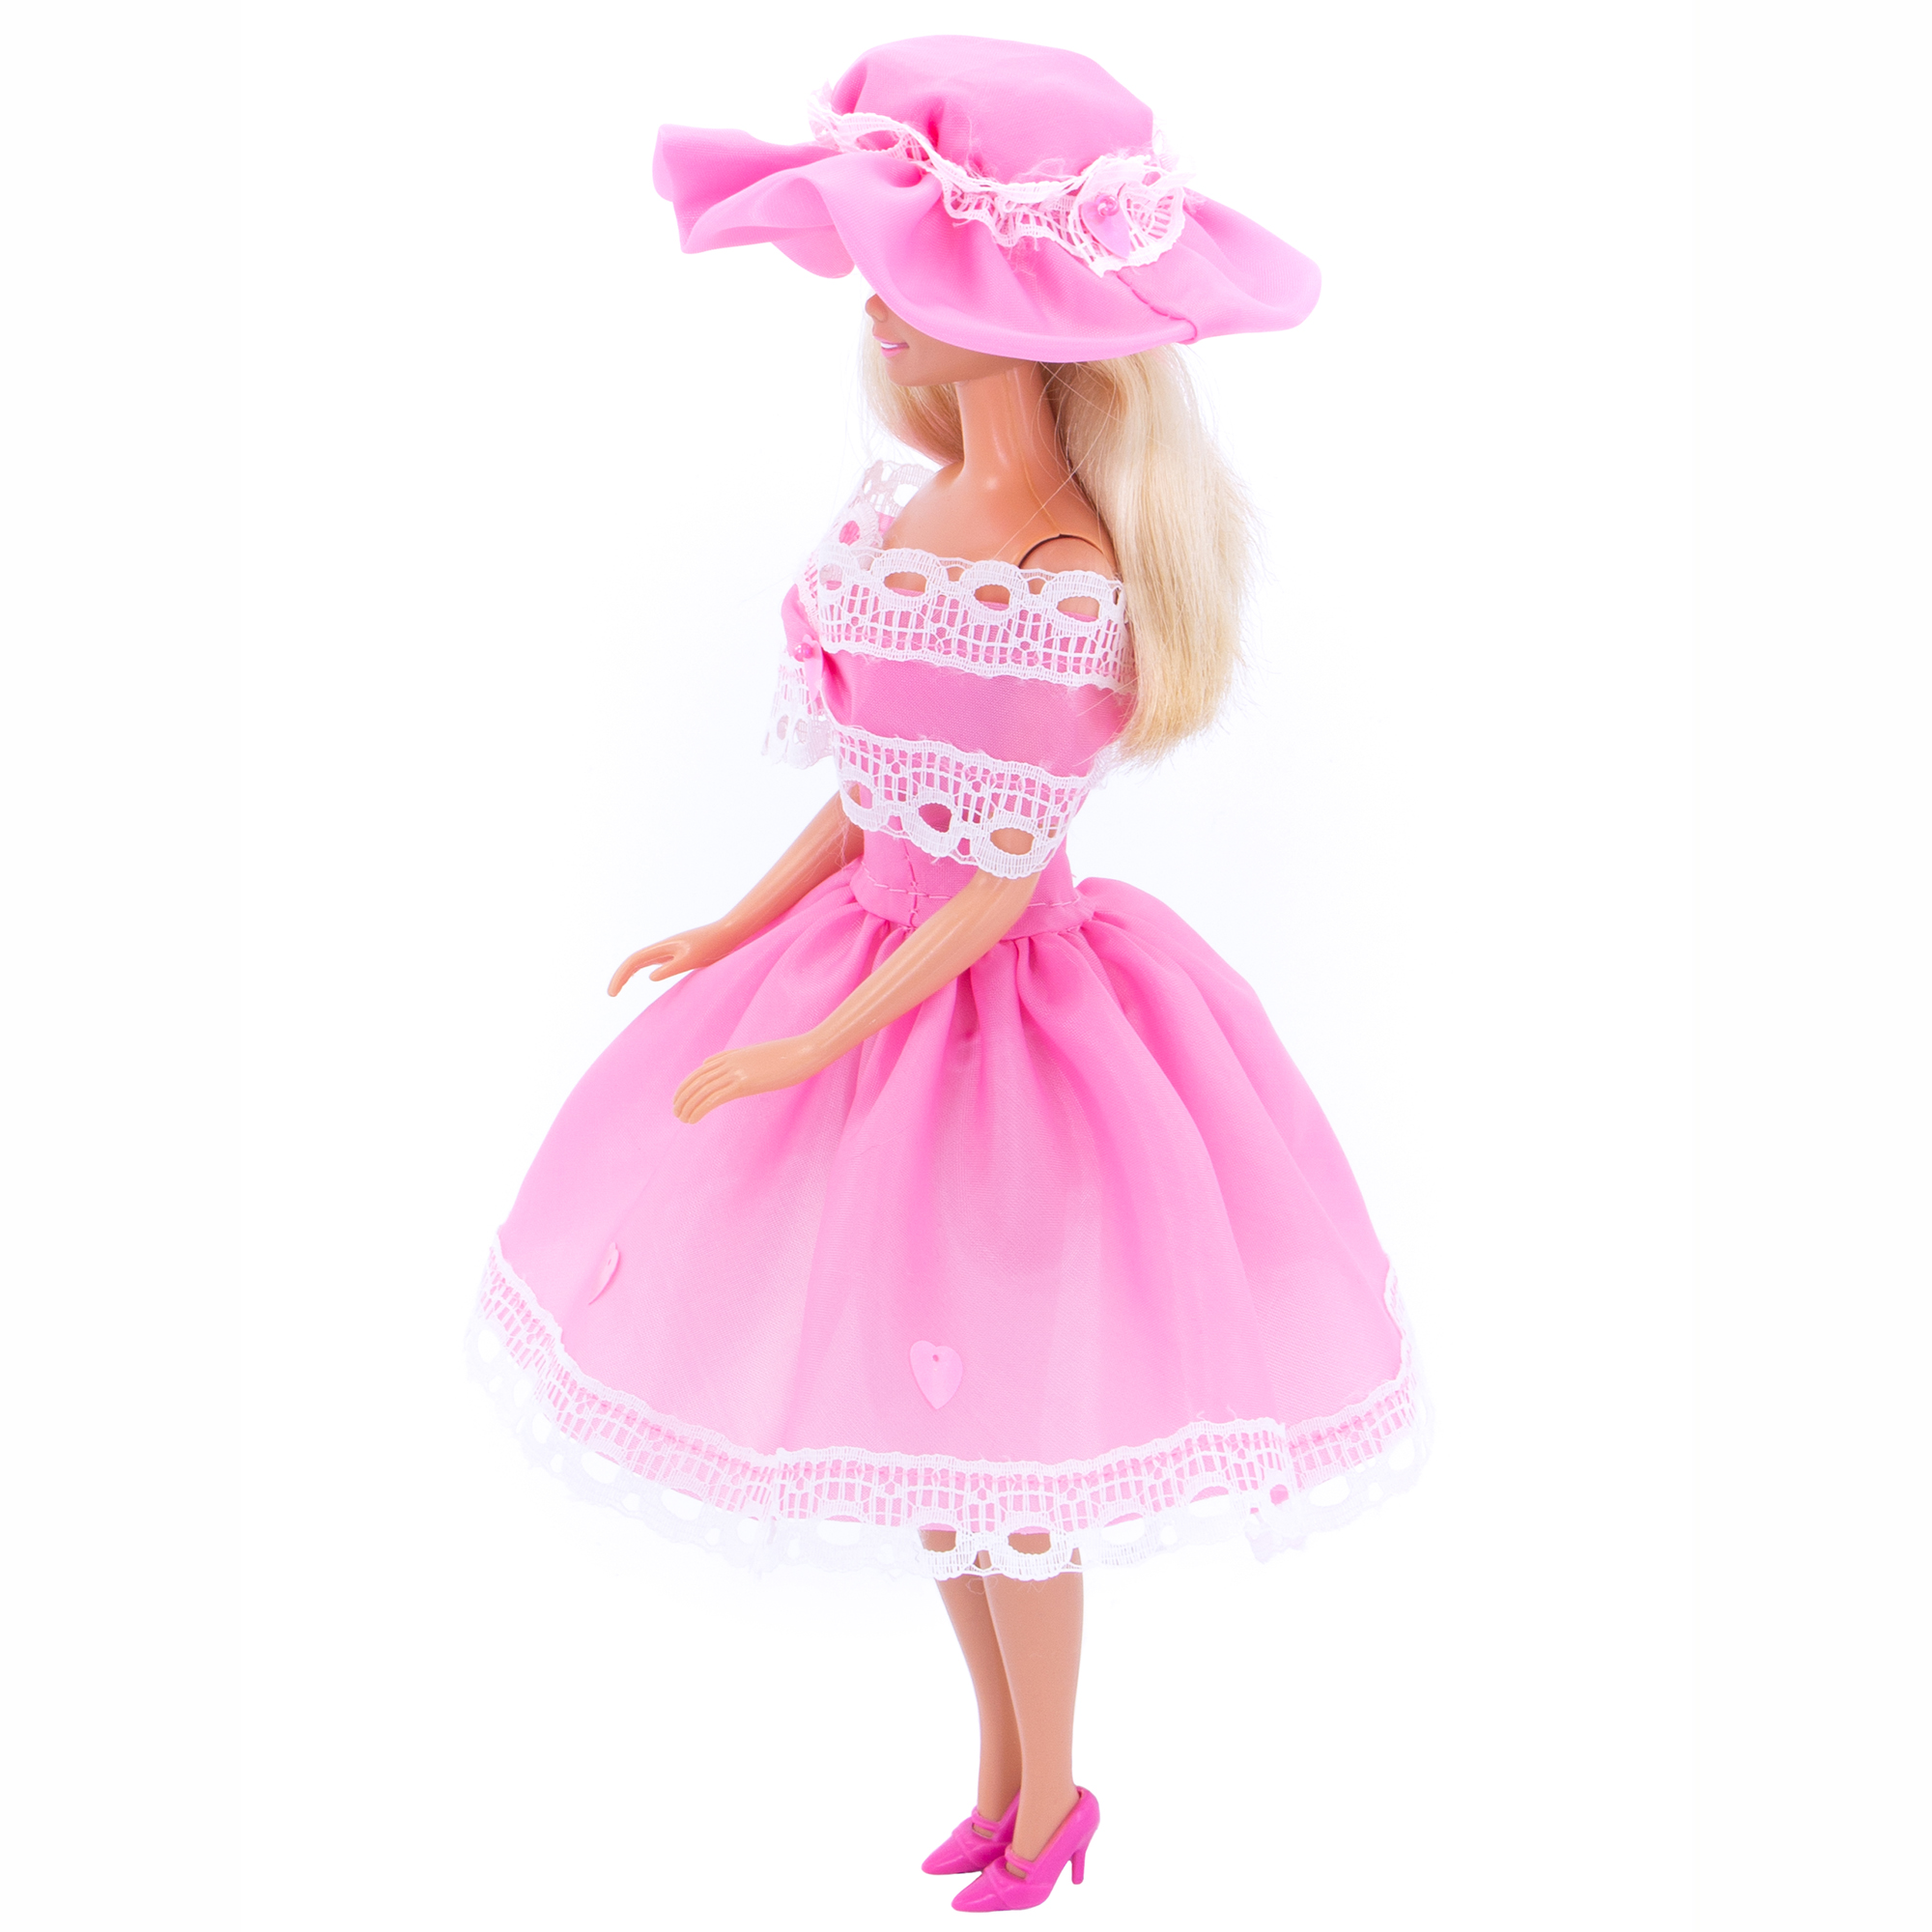 Легкое платье из шелка Модница для куклы 29 см 1401 розовый 1401розовый - фото 4